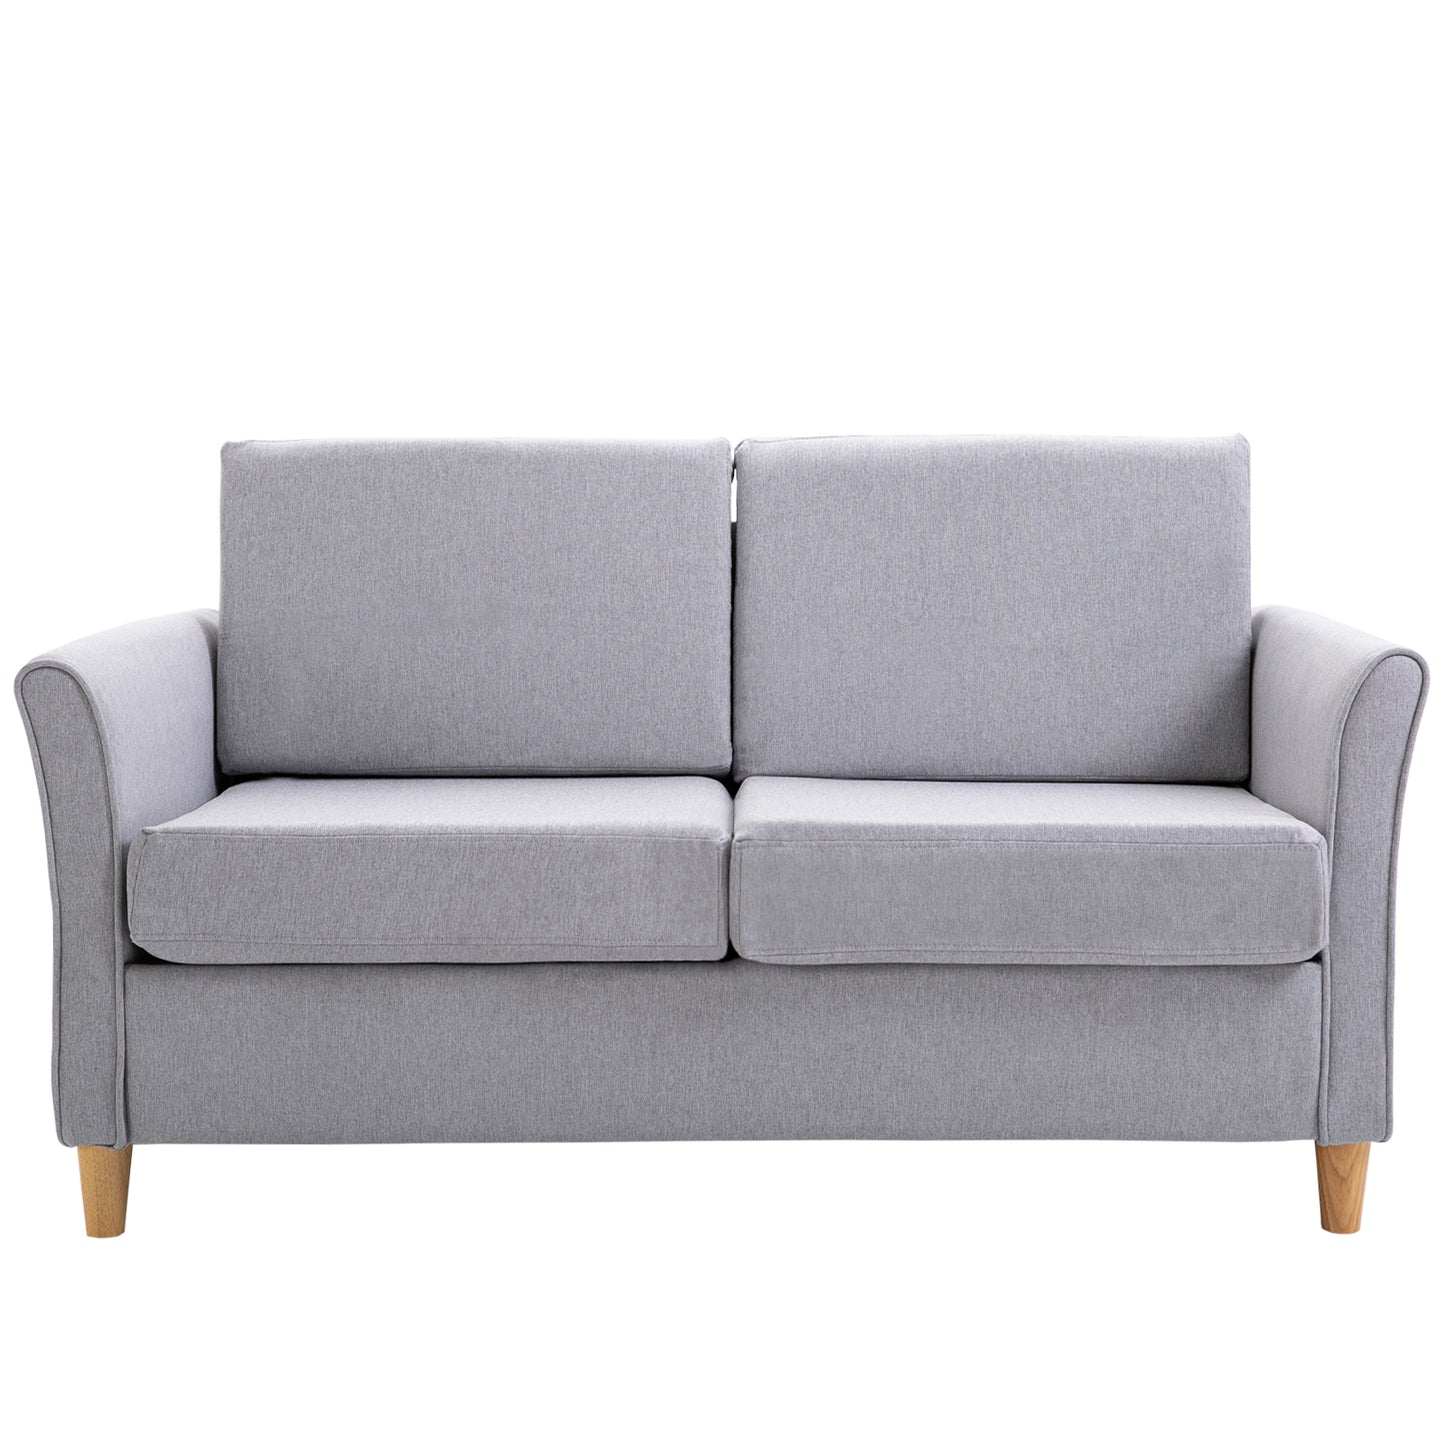 HOMCOM Linen Upholstery 2-Seater Sofa Floor Sofa Living Room Furniture w/Armrest Wooden Legs Grey